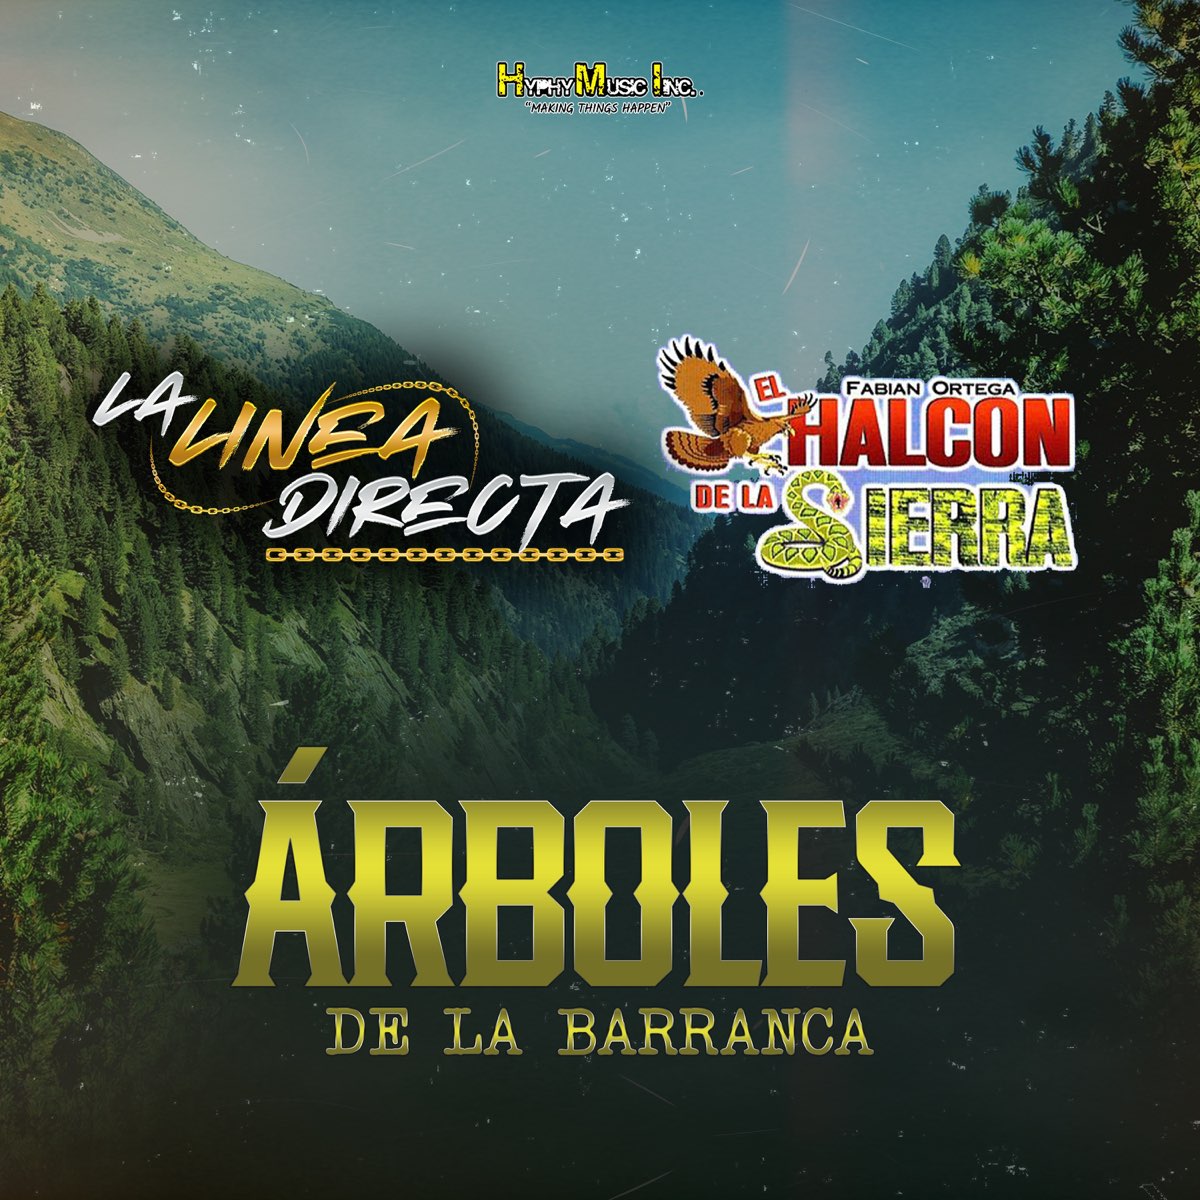 Arboles de La Barranca - Single de La Linea Directa & El Halcon de la  Sierra en Apple Music